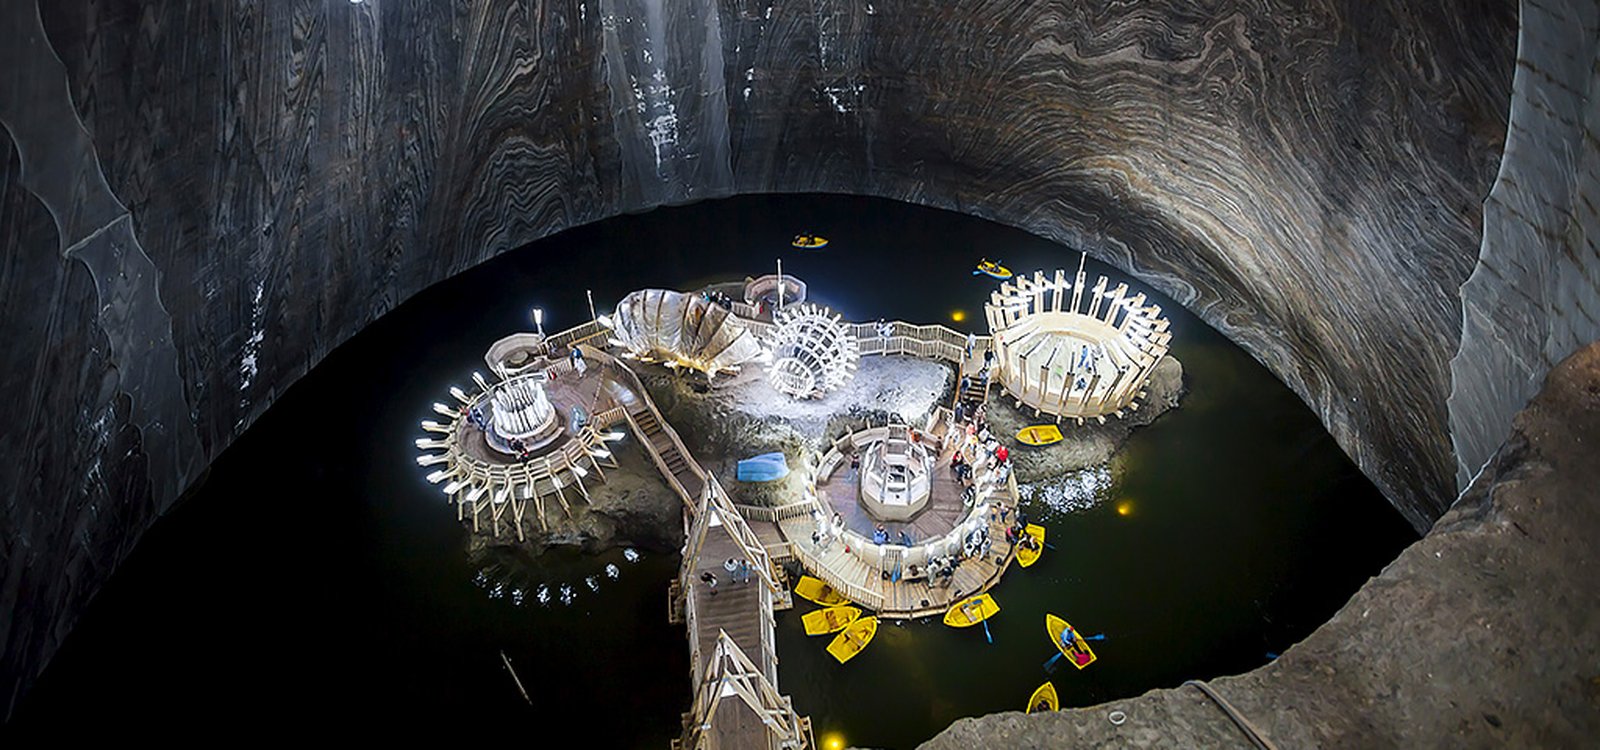 <p>Внутри соляной шахты Салина-Турда, расположенной в Румынии, имеется подземное озеро, по которому посетители могут покататься на лодке.</p>
